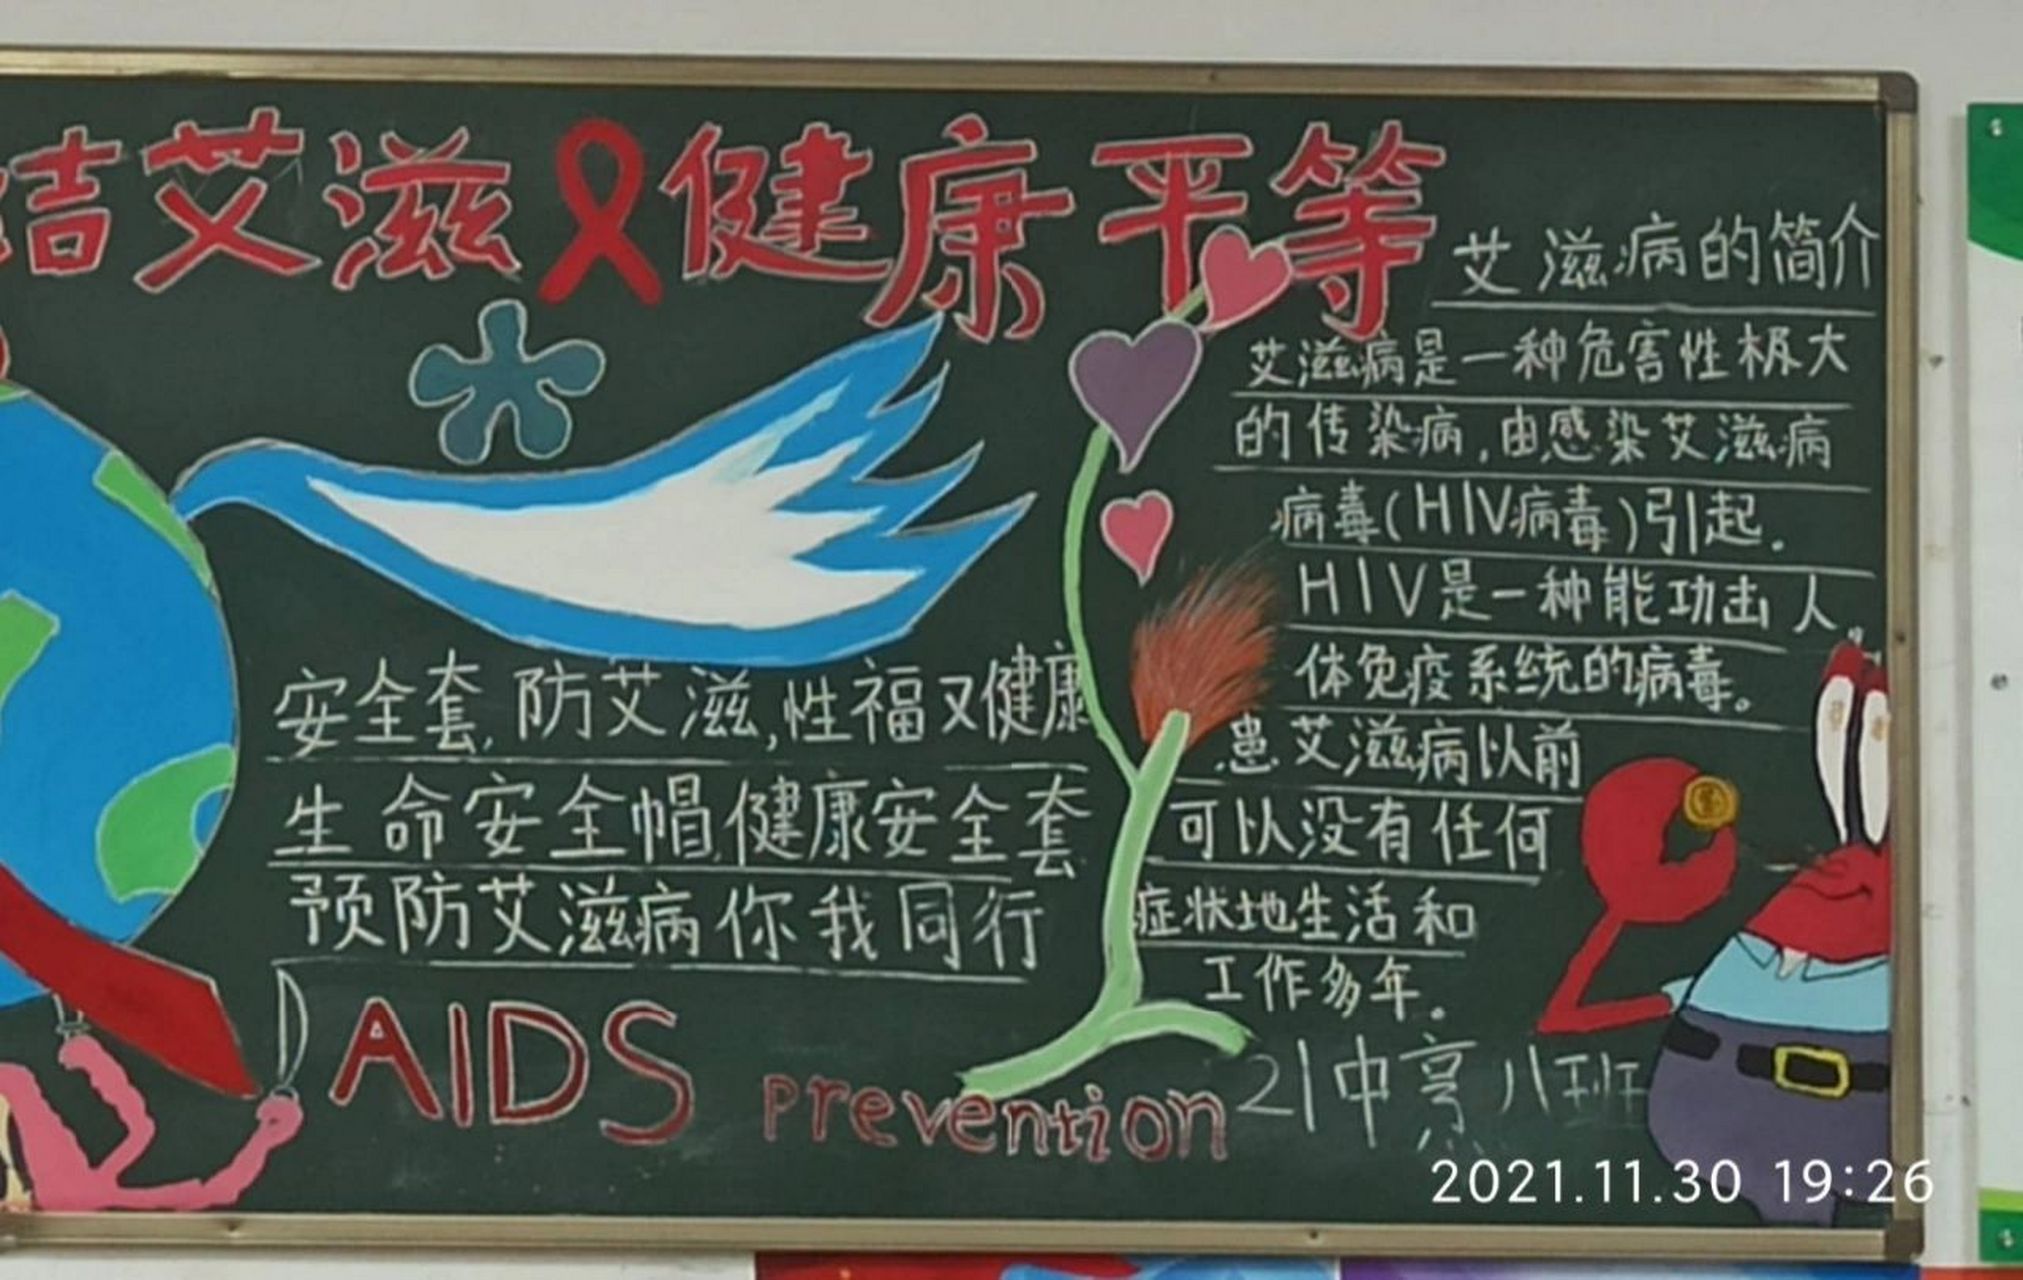 一等奖黑板报推荐 生命至上,终结艾滋,健康平等